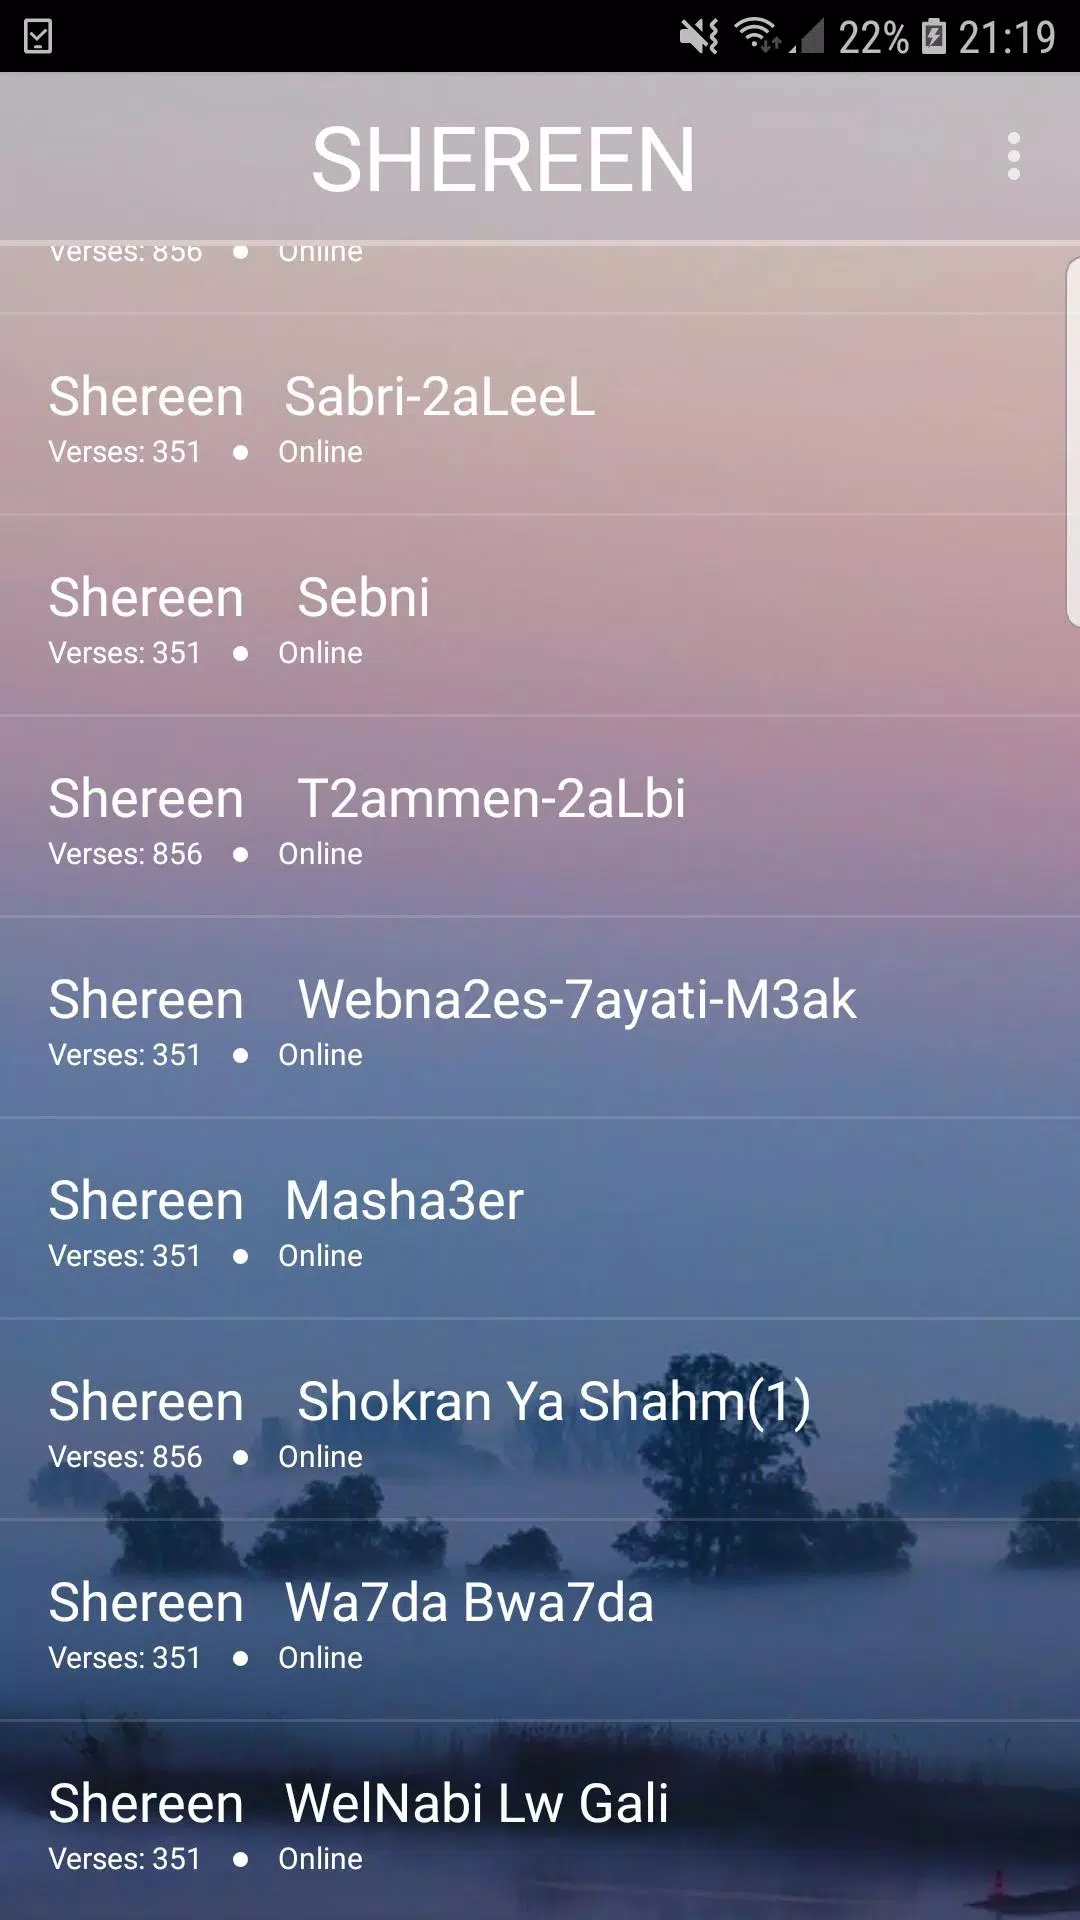 اغاني شيرين 2019-Aghani sherine mp3 APK for Android Download